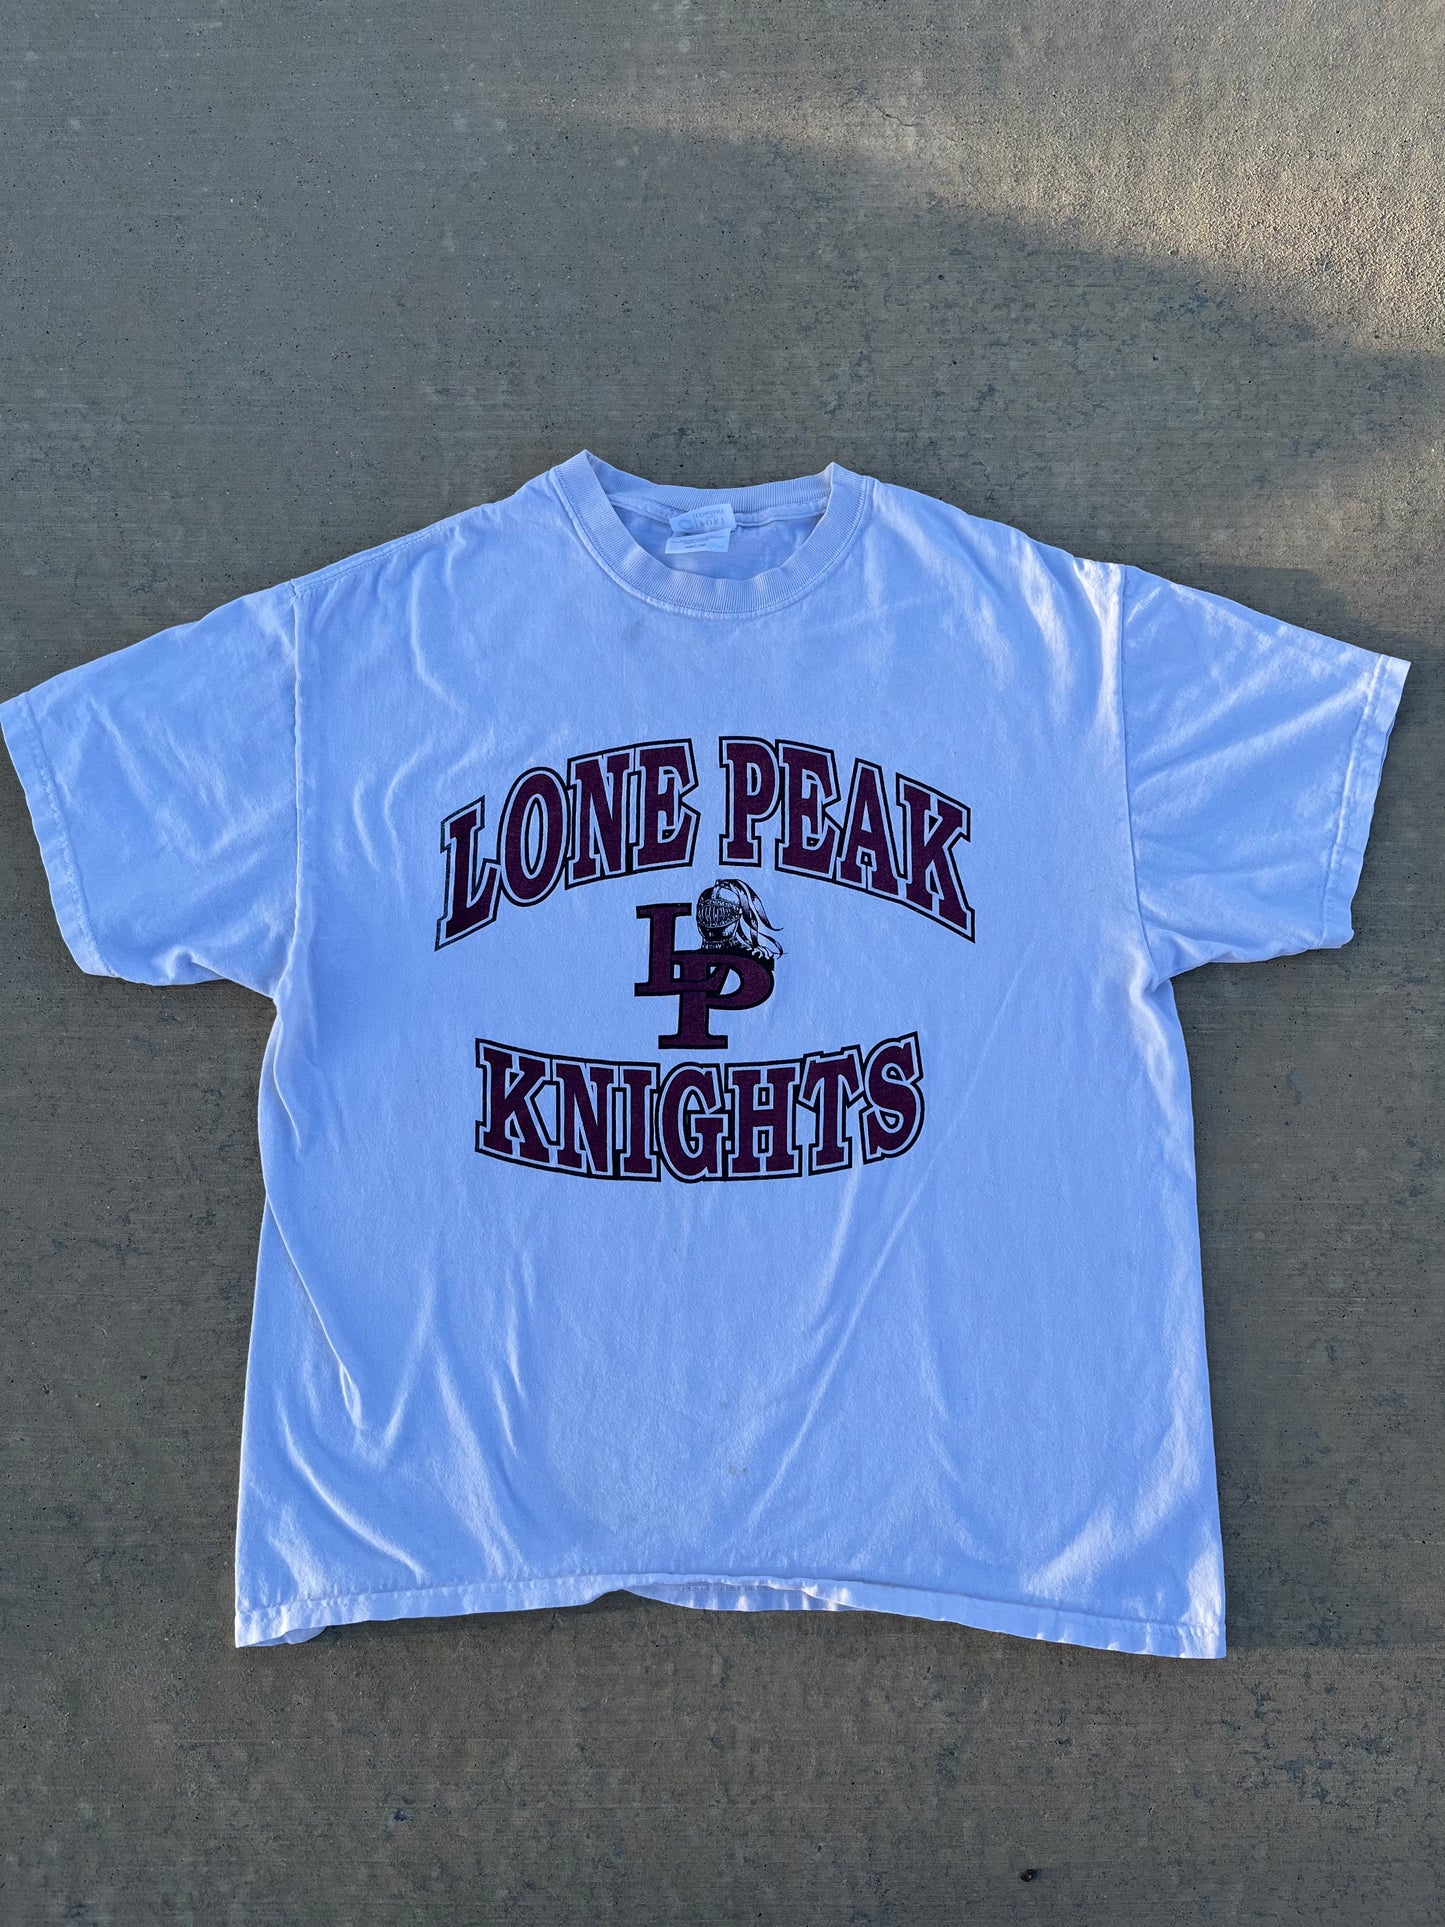 Lone Peak Knights T-Shirt